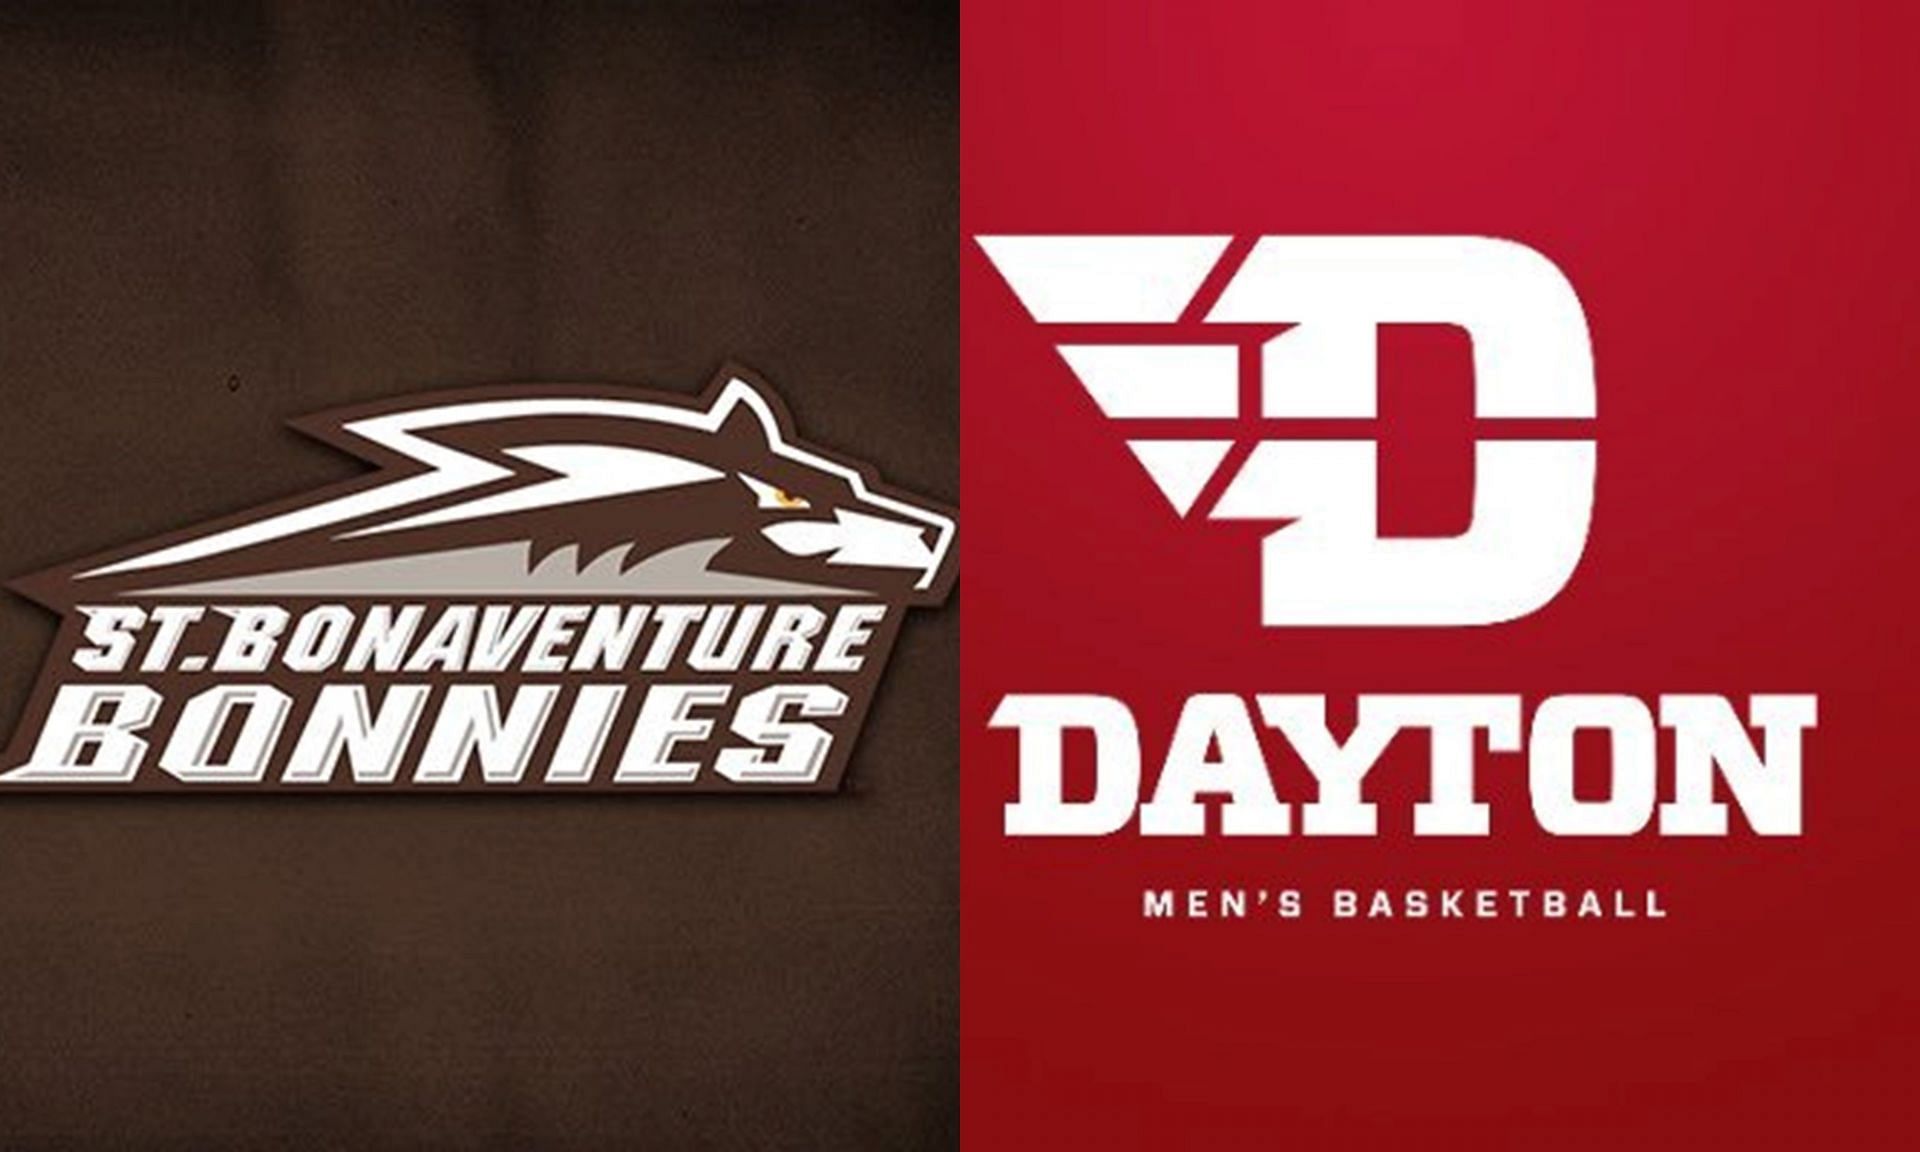 Details to watch Dayton vs St. Bonaventure basketball game